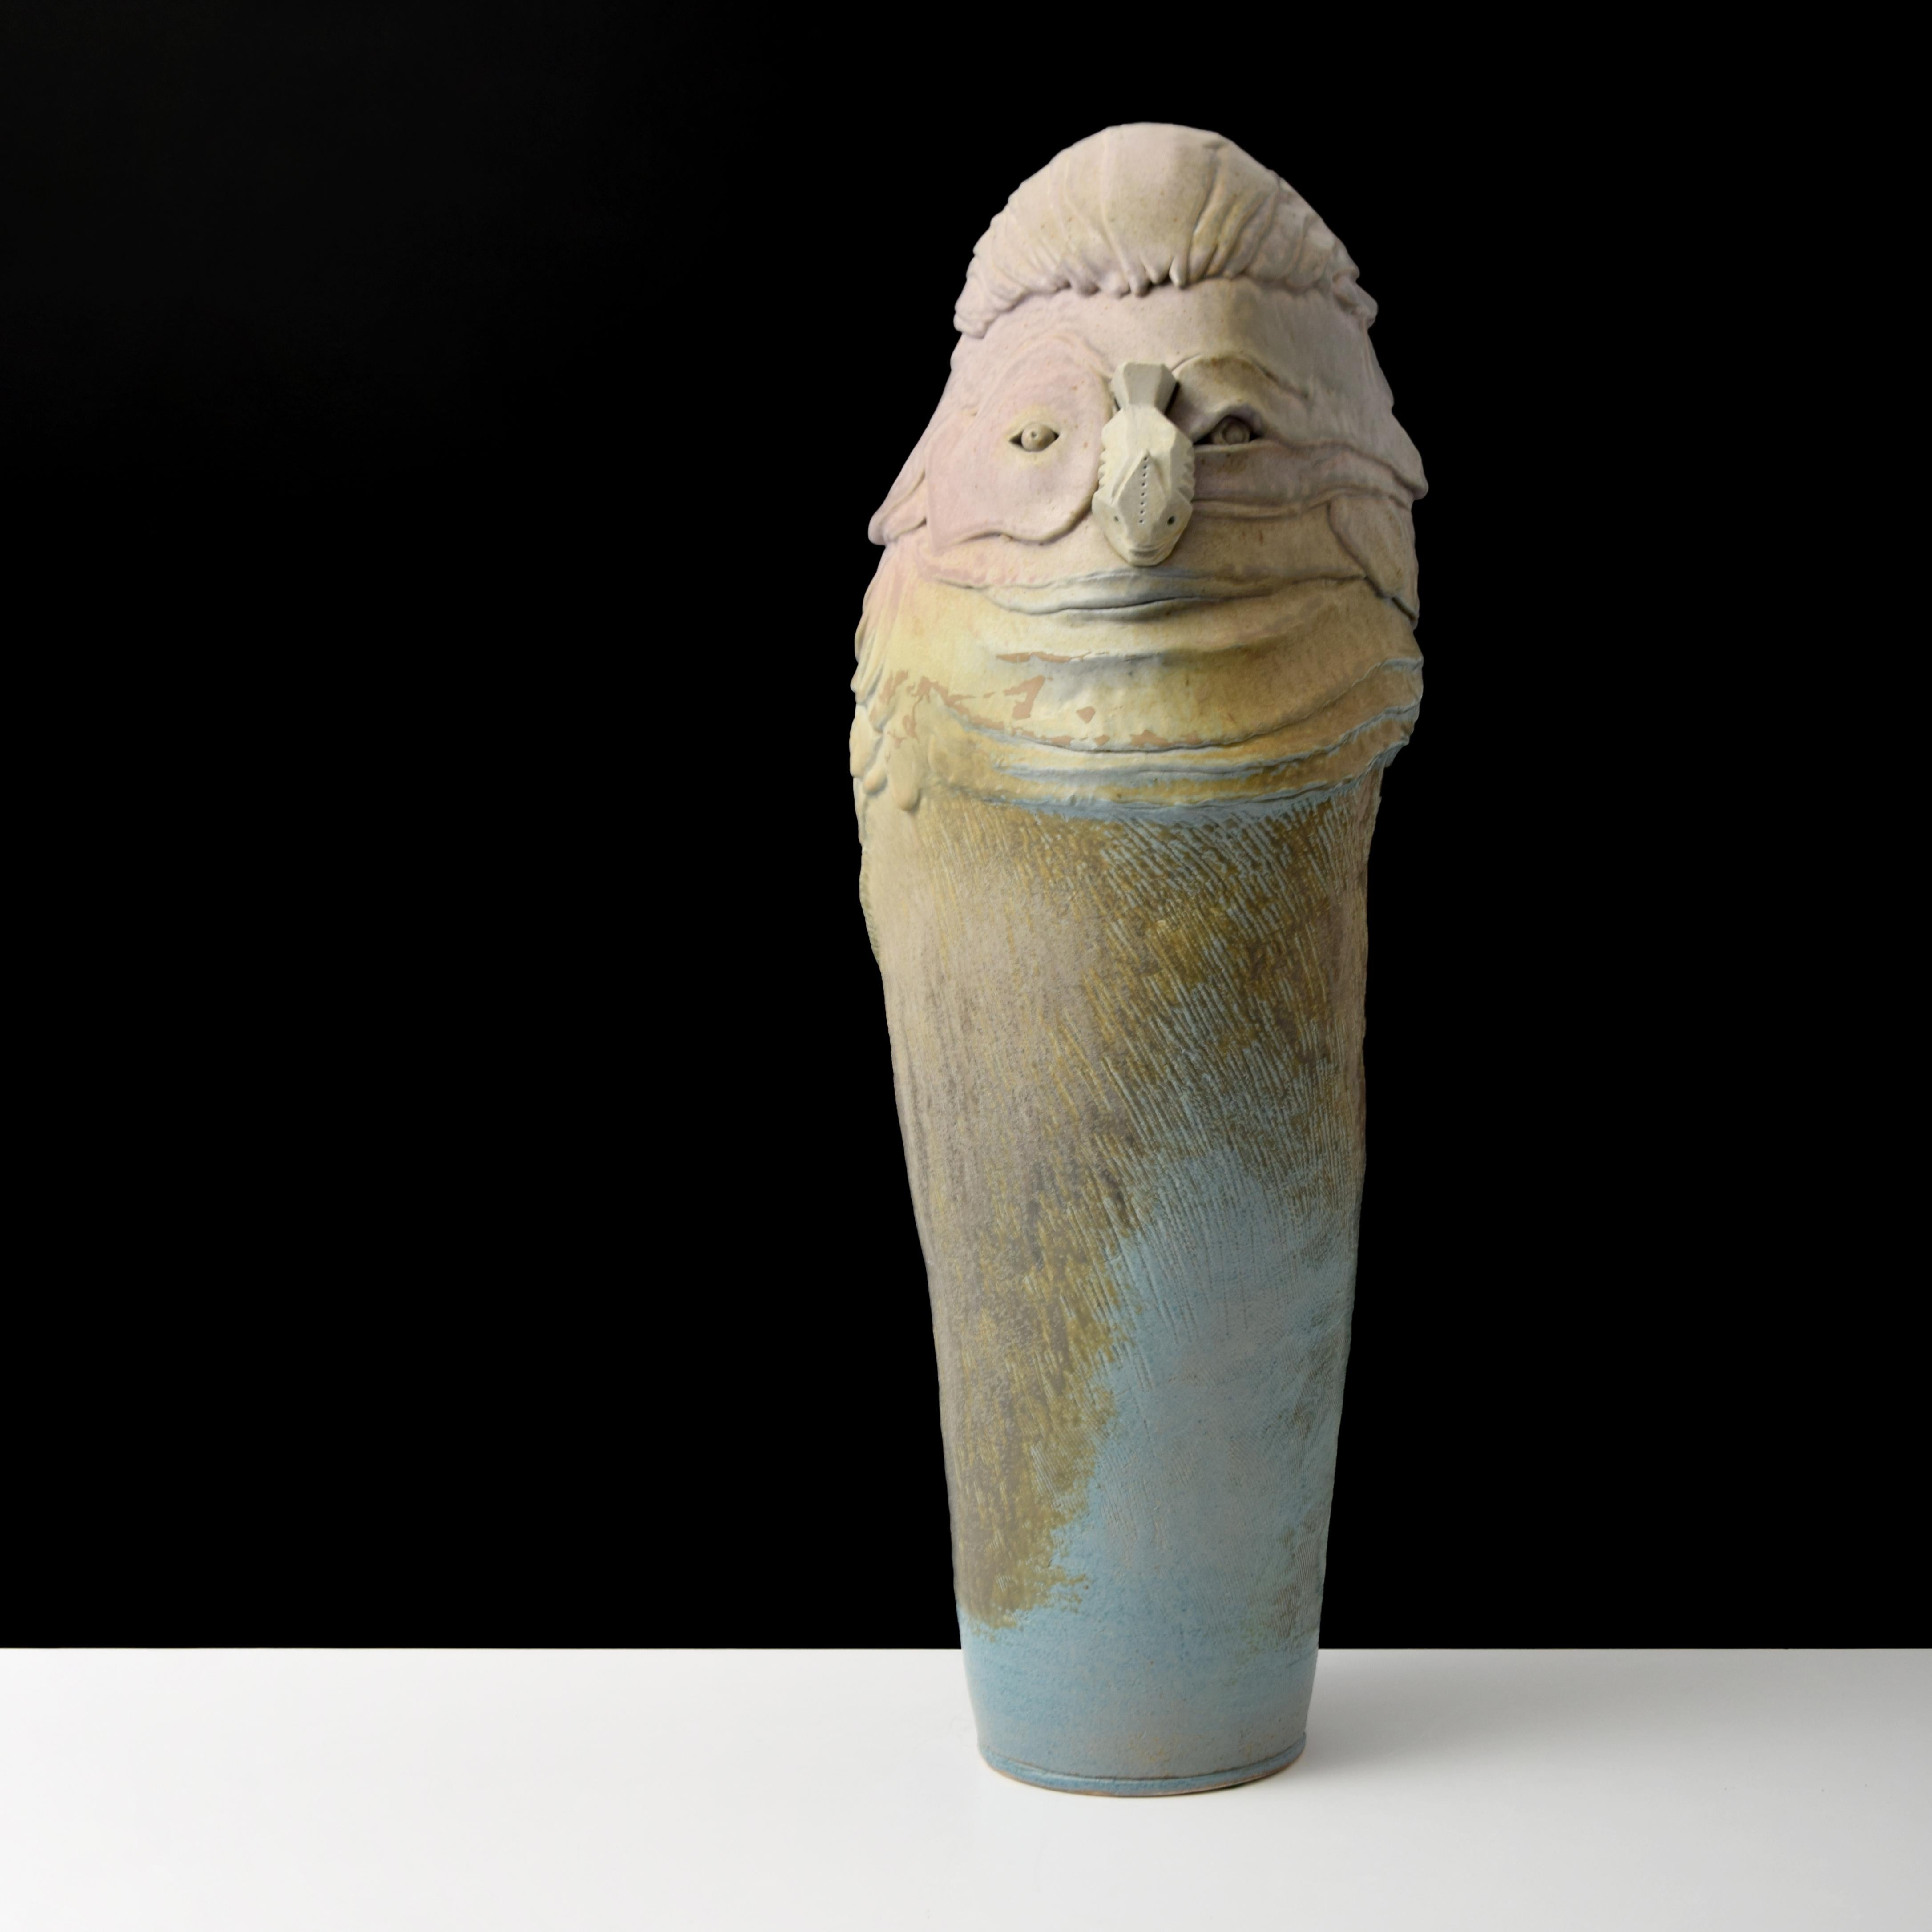 Zusätzliche Informationen: Tom Suomalainen ist ein Keramikkünstler, der für seine kreativen und fantasievollen Skulpturen bekannt ist.

Kennzeichnung(en); Anmerkungen: unterzeichnet

Herkunftsland; MATERIALIEN: USA; Steingut